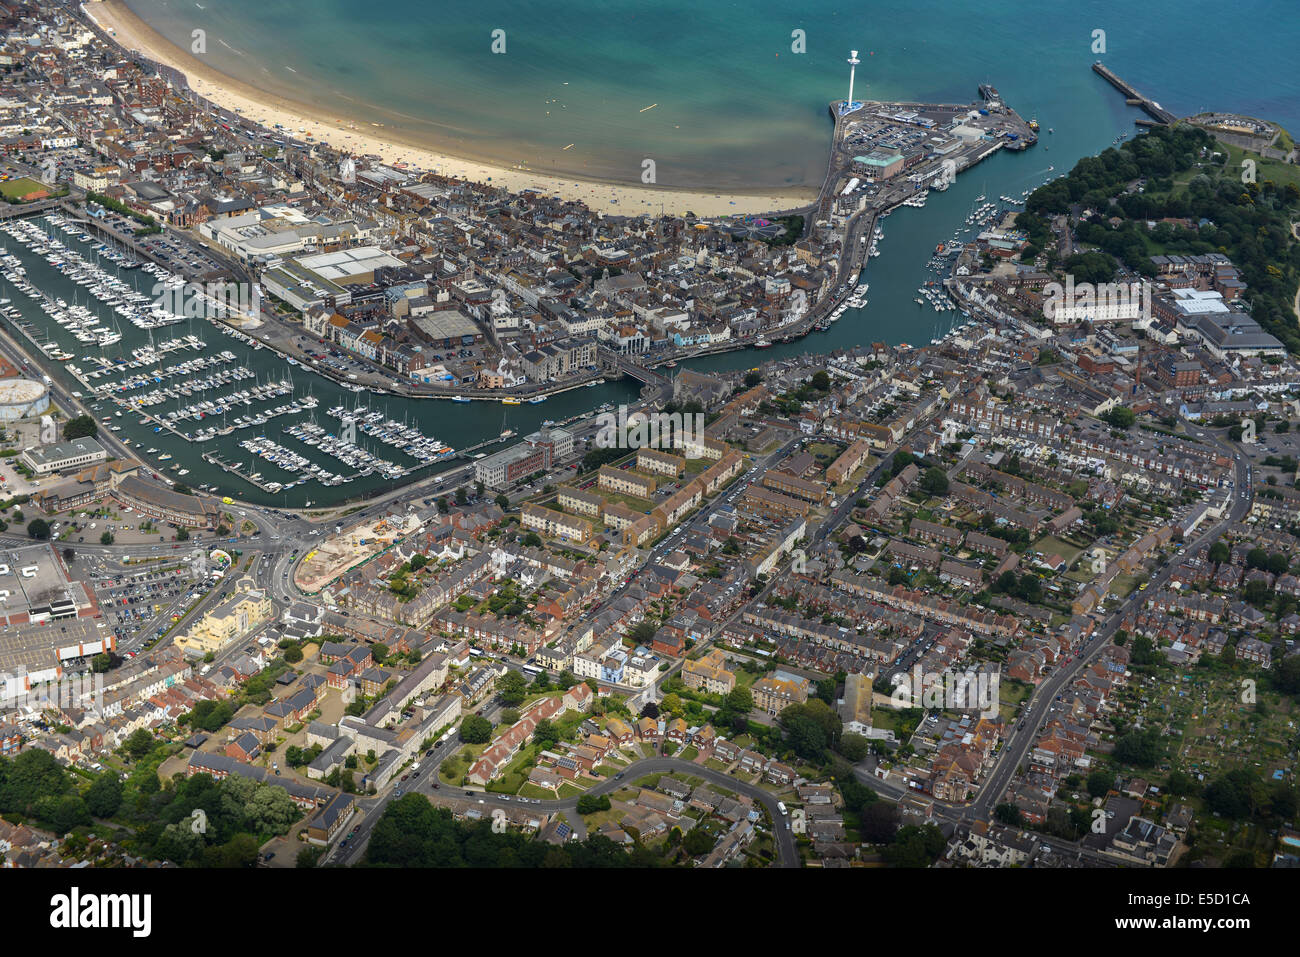 Eine Luftaufnahme des Dorset Stadt von Weymouth konzentriert sich auf das Stadtgebiet Zentrum und Hafen Stockfoto